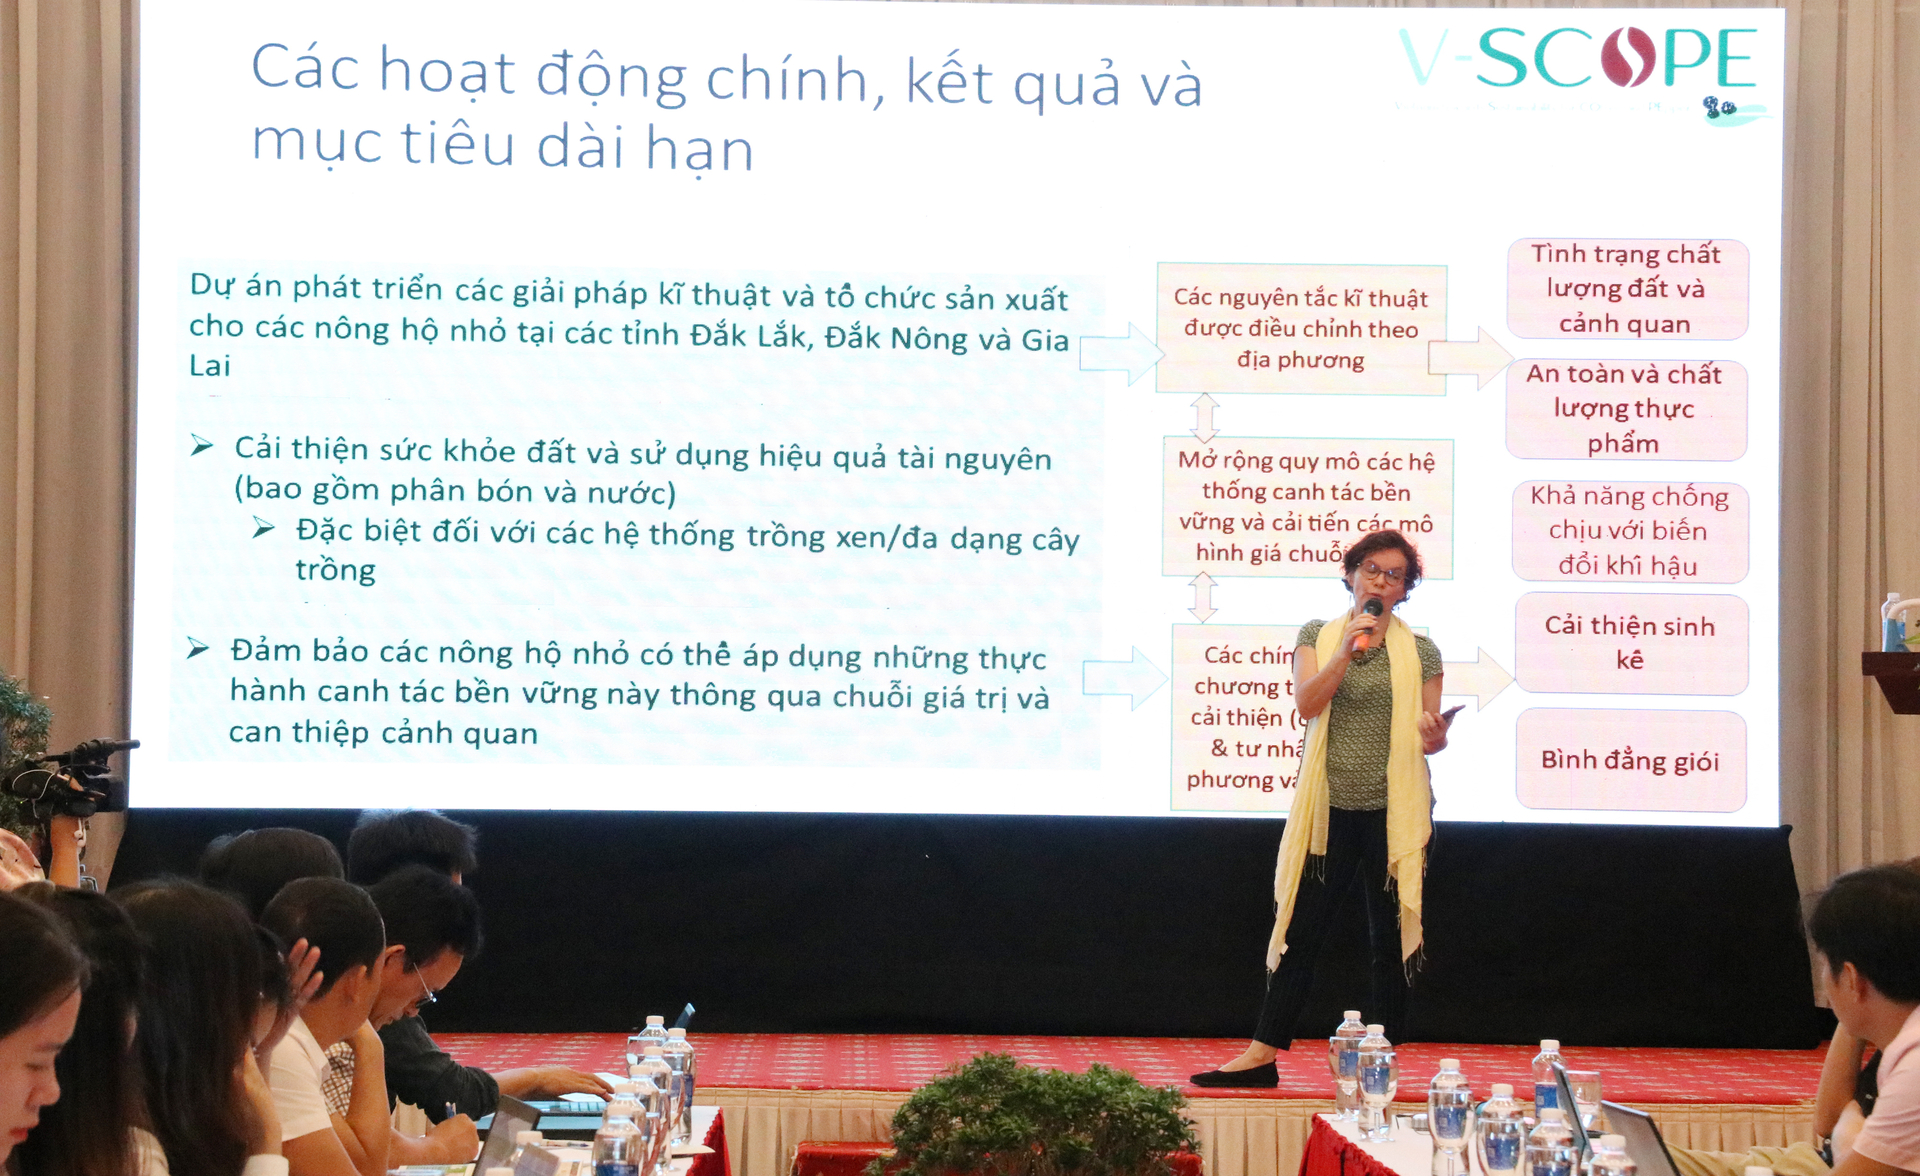 TS. Estelle Biénabe, Trưởng Dự án V-SCOPE giới thiệu về dự án và những kết quả đạt được. Ảnh: Quang Yên.